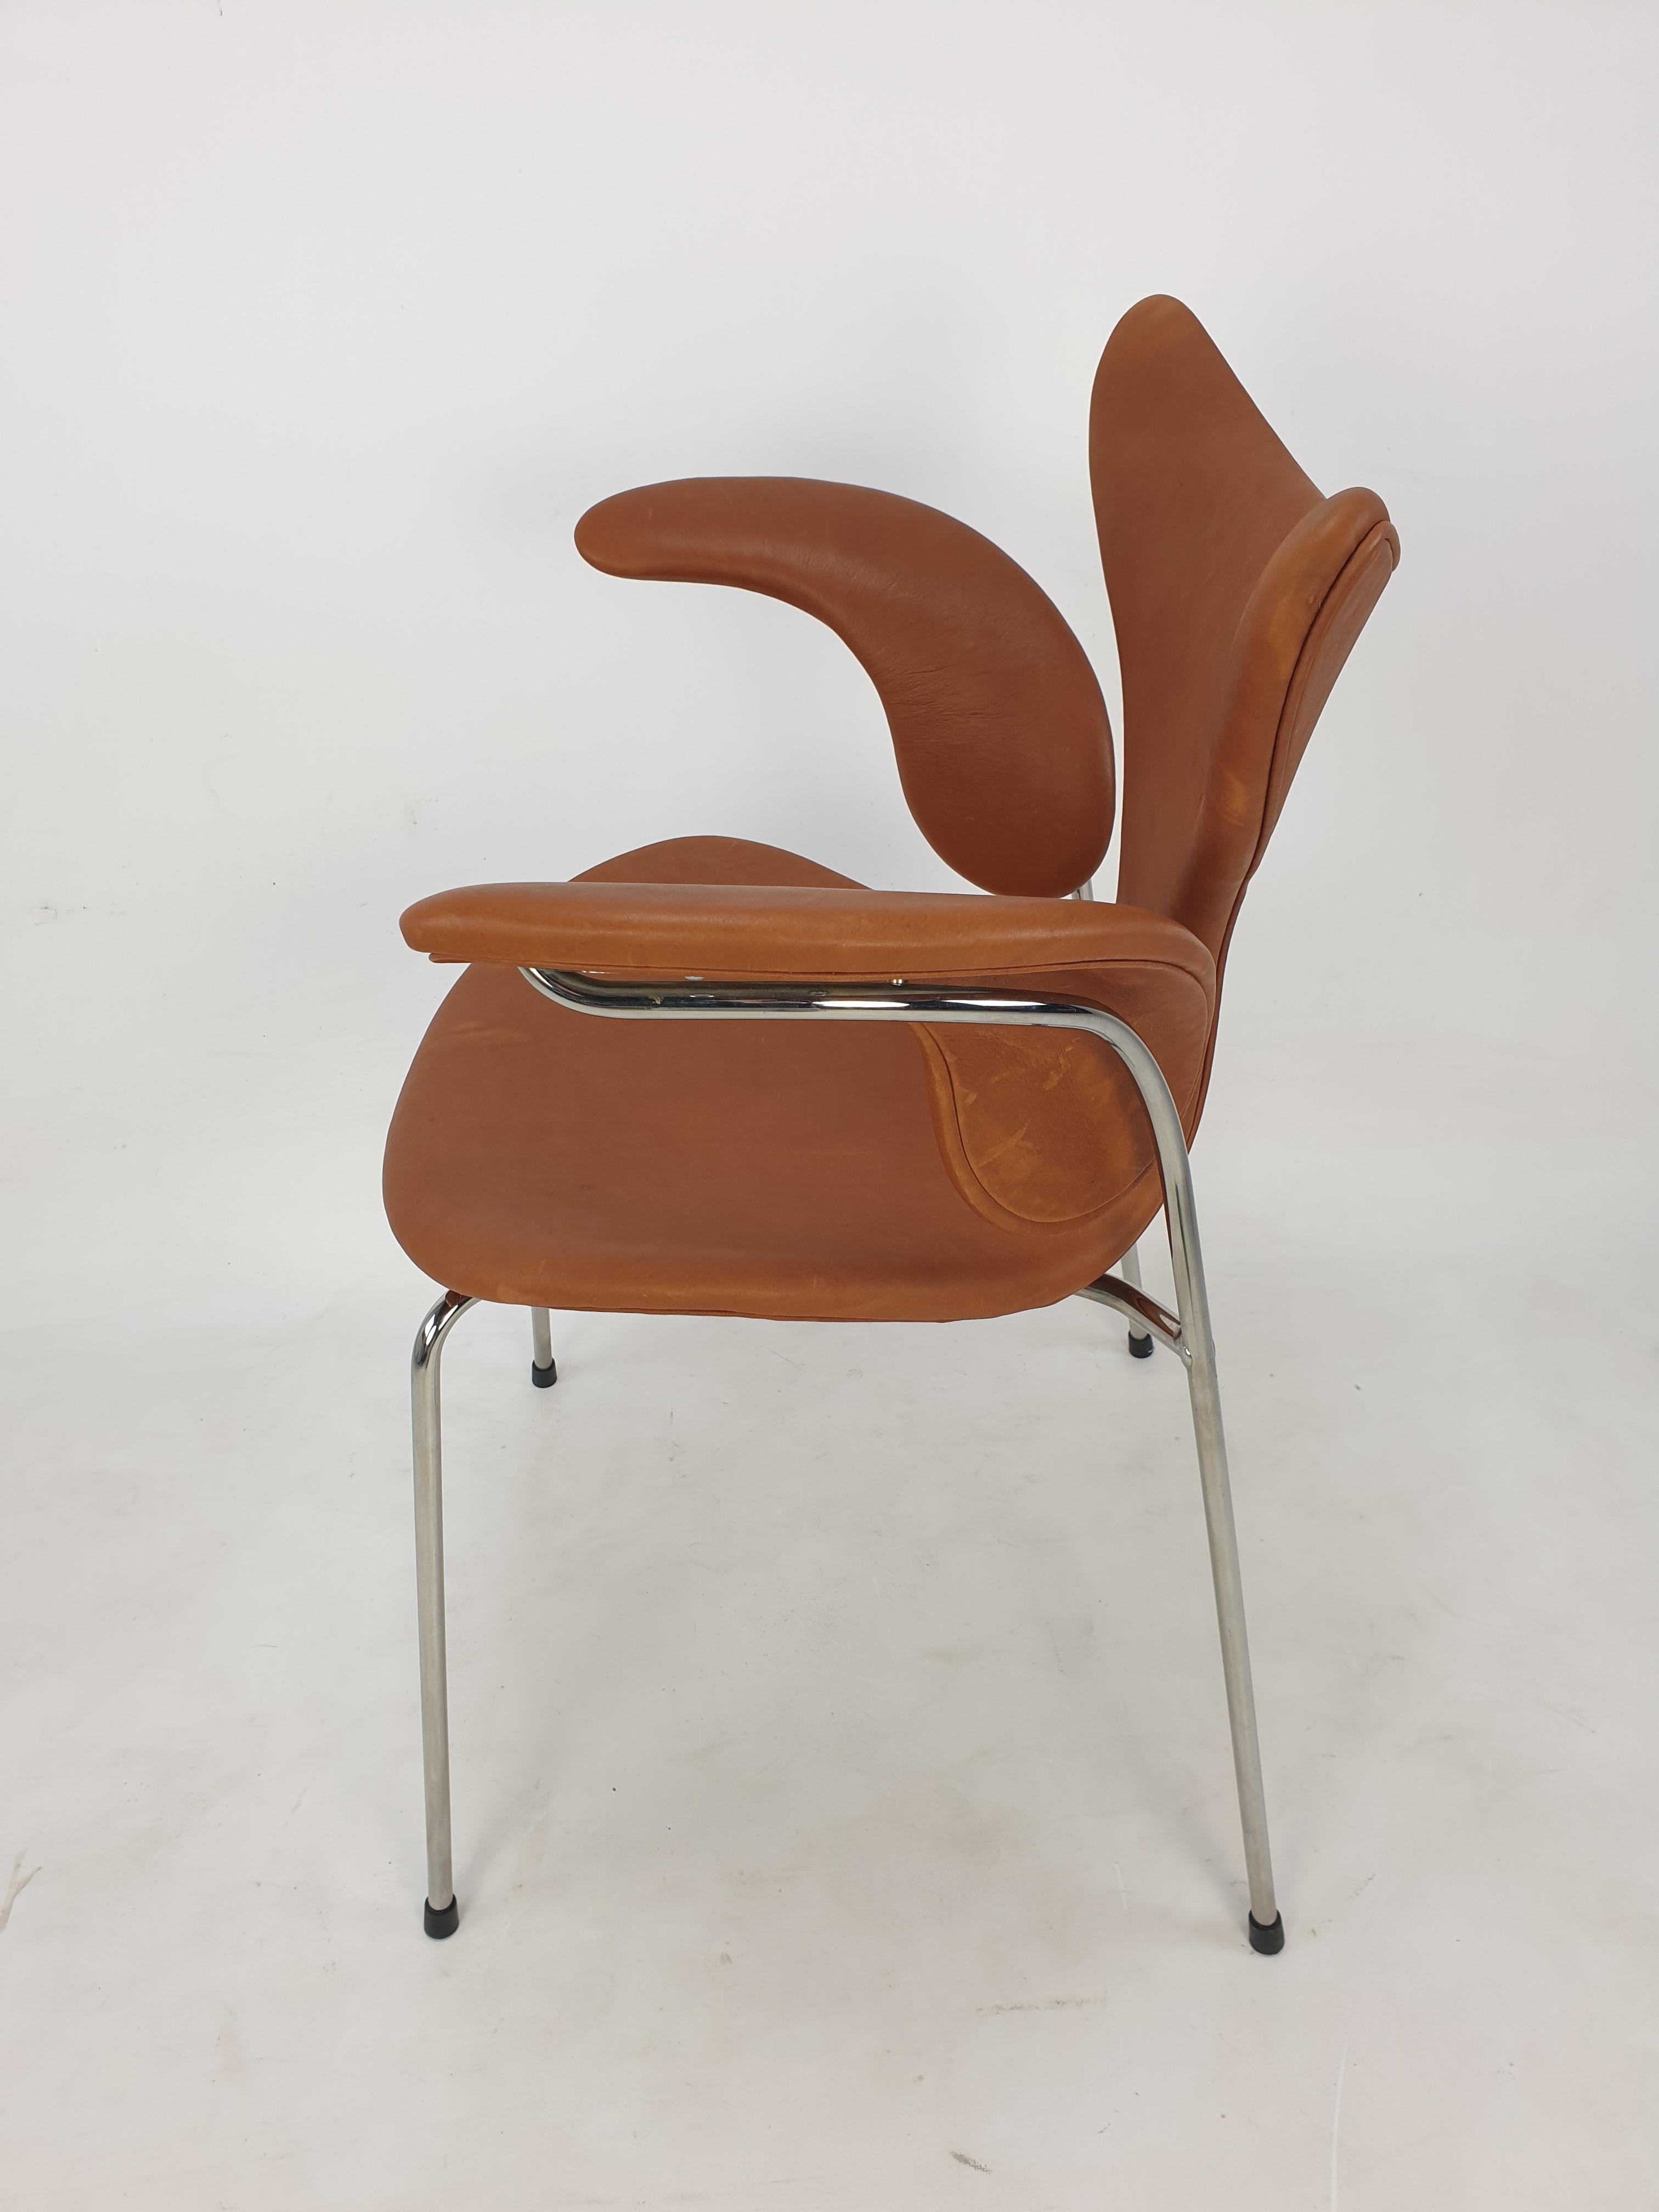 Danish Seagull Chair by Arne Jacobsen for Fritz Hansen, 1960s For Sale